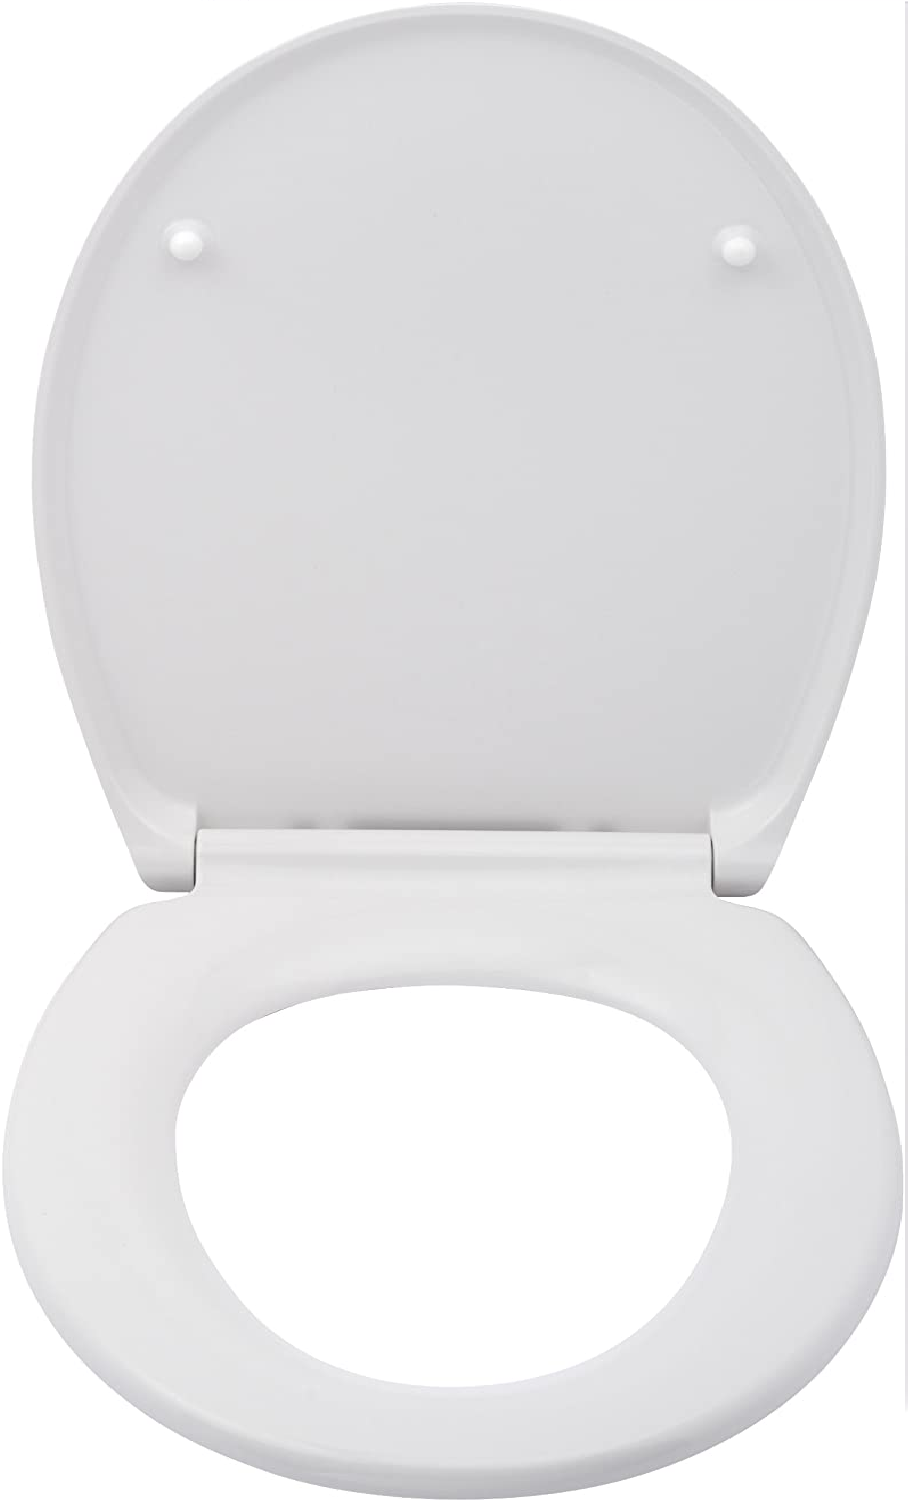 WC-Sitz Cento, hygienischer Toilettensitz mit Absenkautomatik, WC-Deckel mit Fix-Clip Hygiene-Befestigung, aus antibakteriellem Duroplast, Weiß